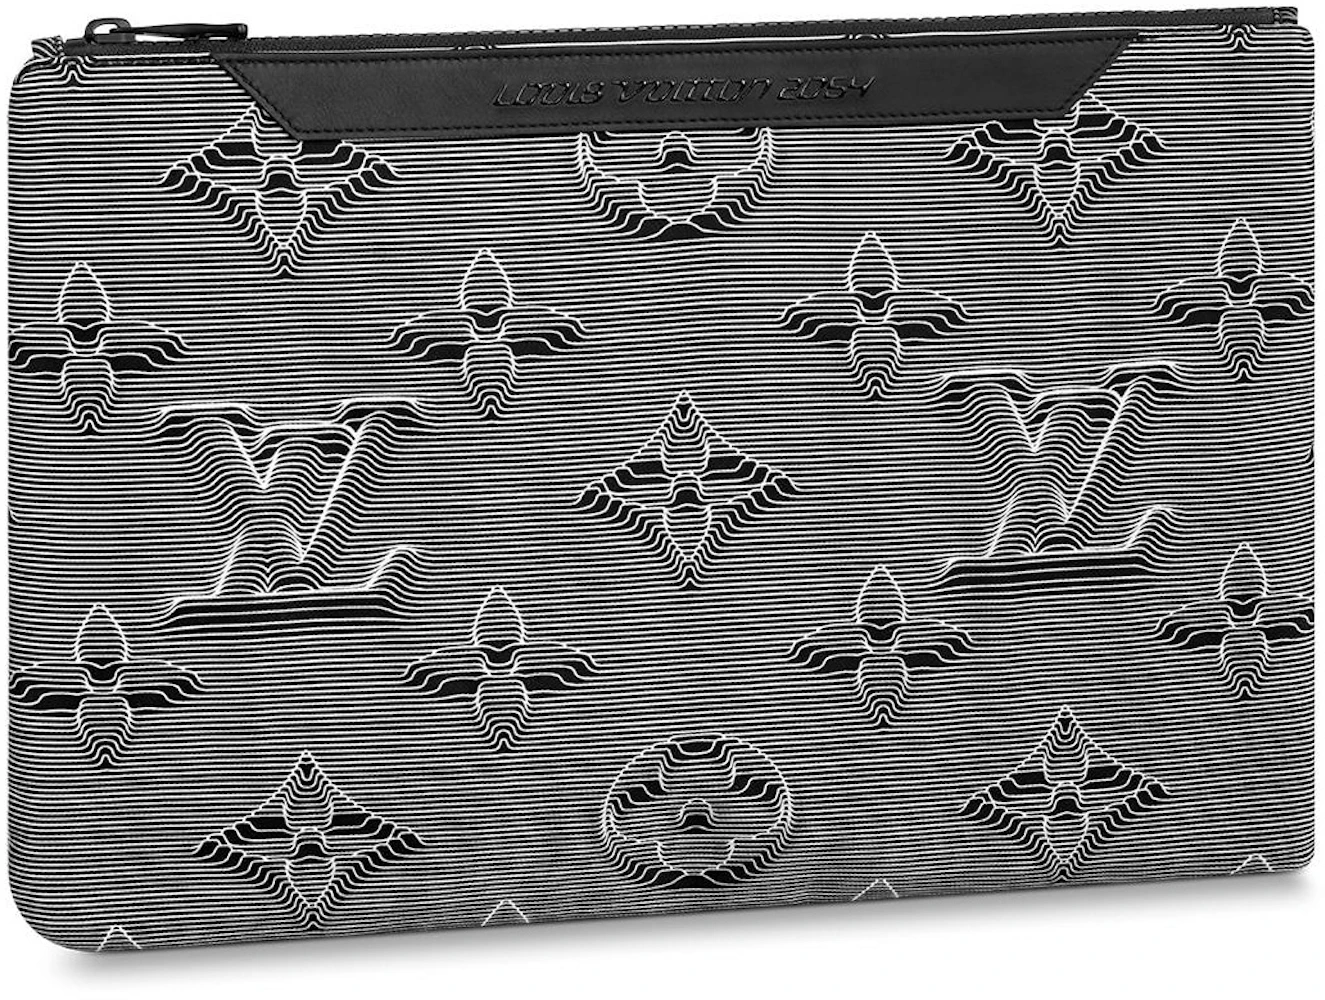 Louis Vuitton Virgil Abloh Monogram Reversible Pouch